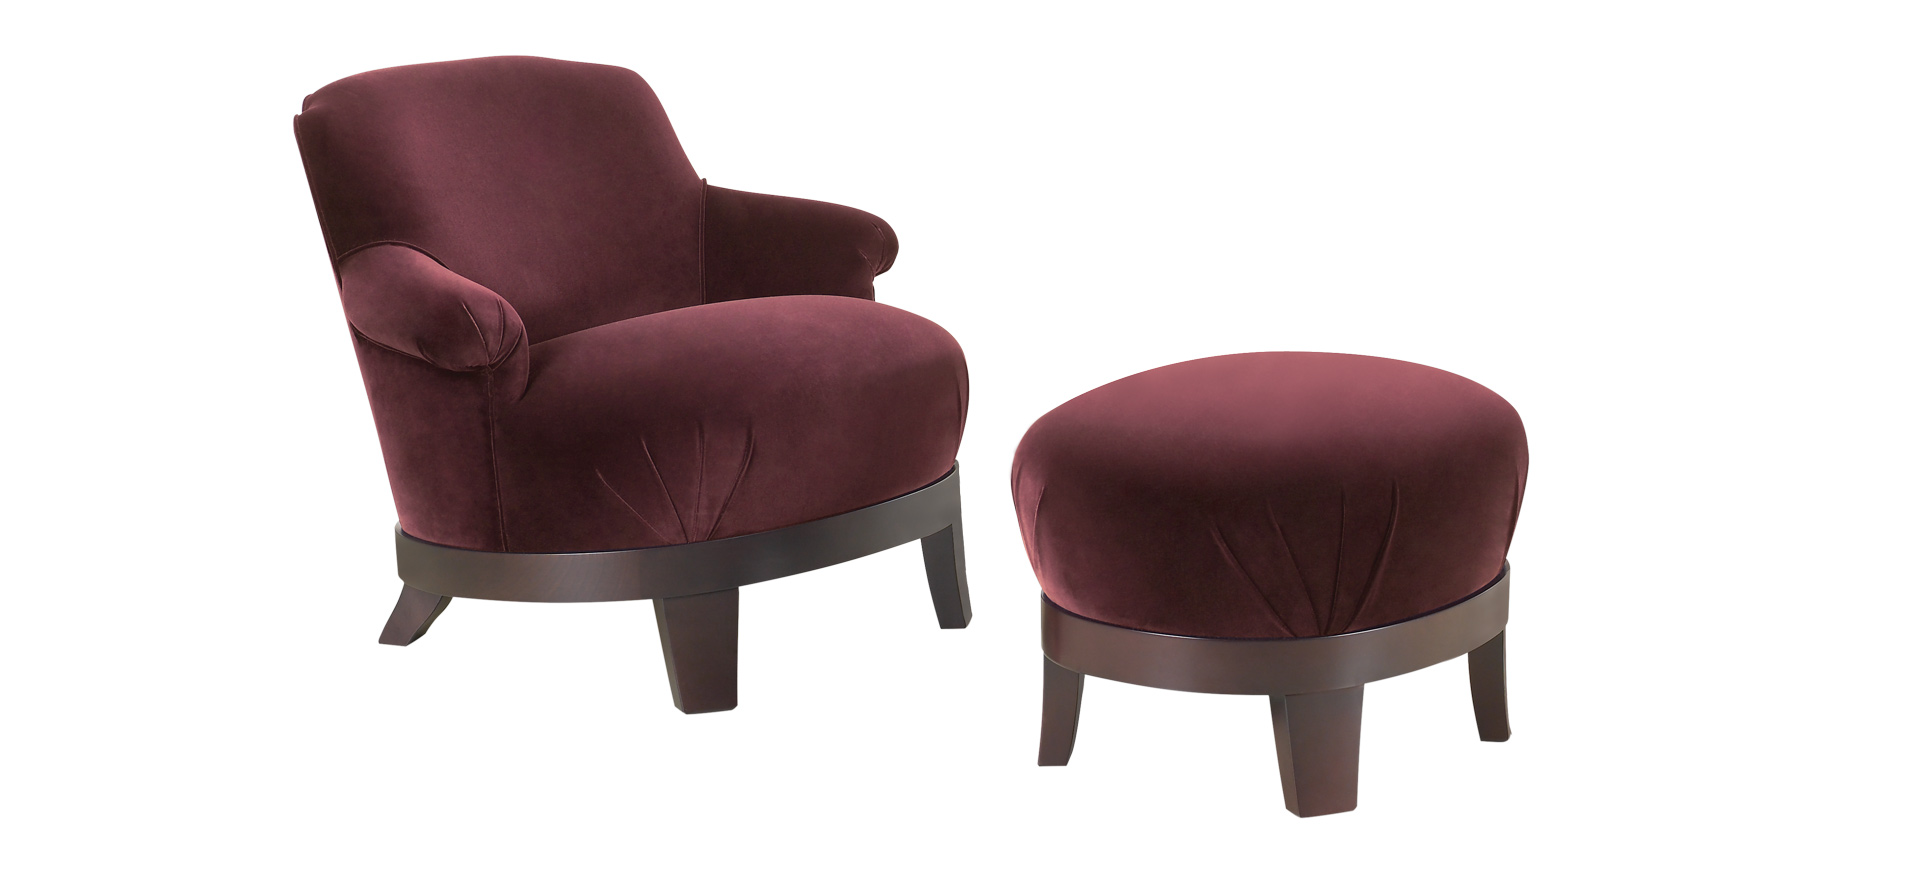 Gacy est un fauteuil en bois avec revêtement en tissu ou cuir. Ce meuble figure dans le catalogue Promemoria | Promemoria